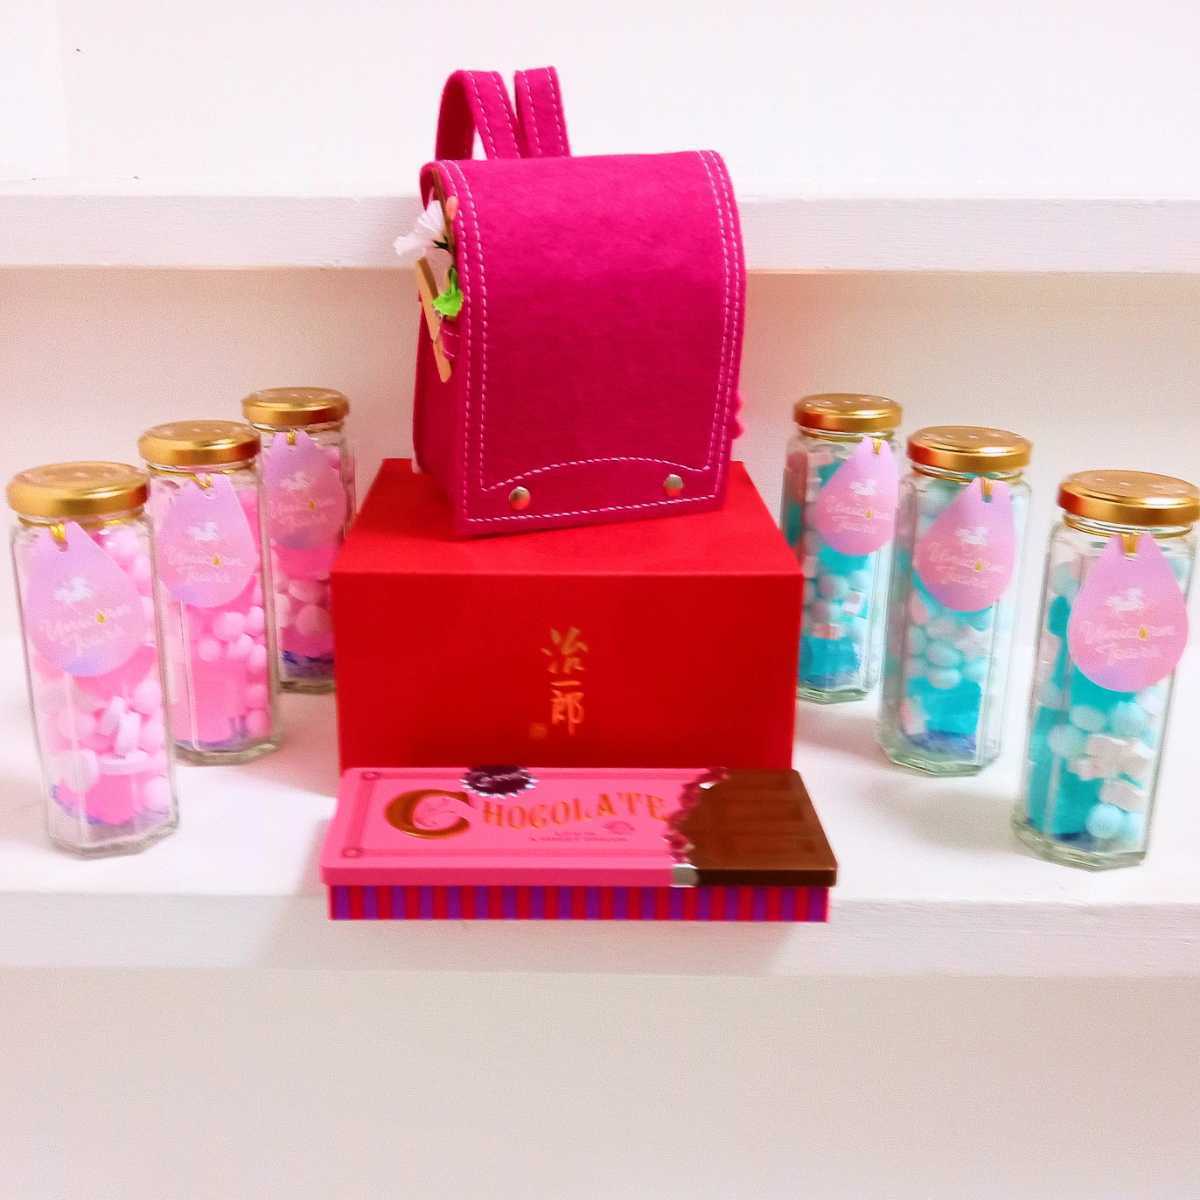 지이치로의 사랑스러운 빨간 상자 귀여운 핑크색 펠트 수제 책가방 맛있는 라무네 & 캔디 유니콘 눈물 초콜릿 통, 핸드메이드 아이템, 내부, 잡화, 장식, 물체